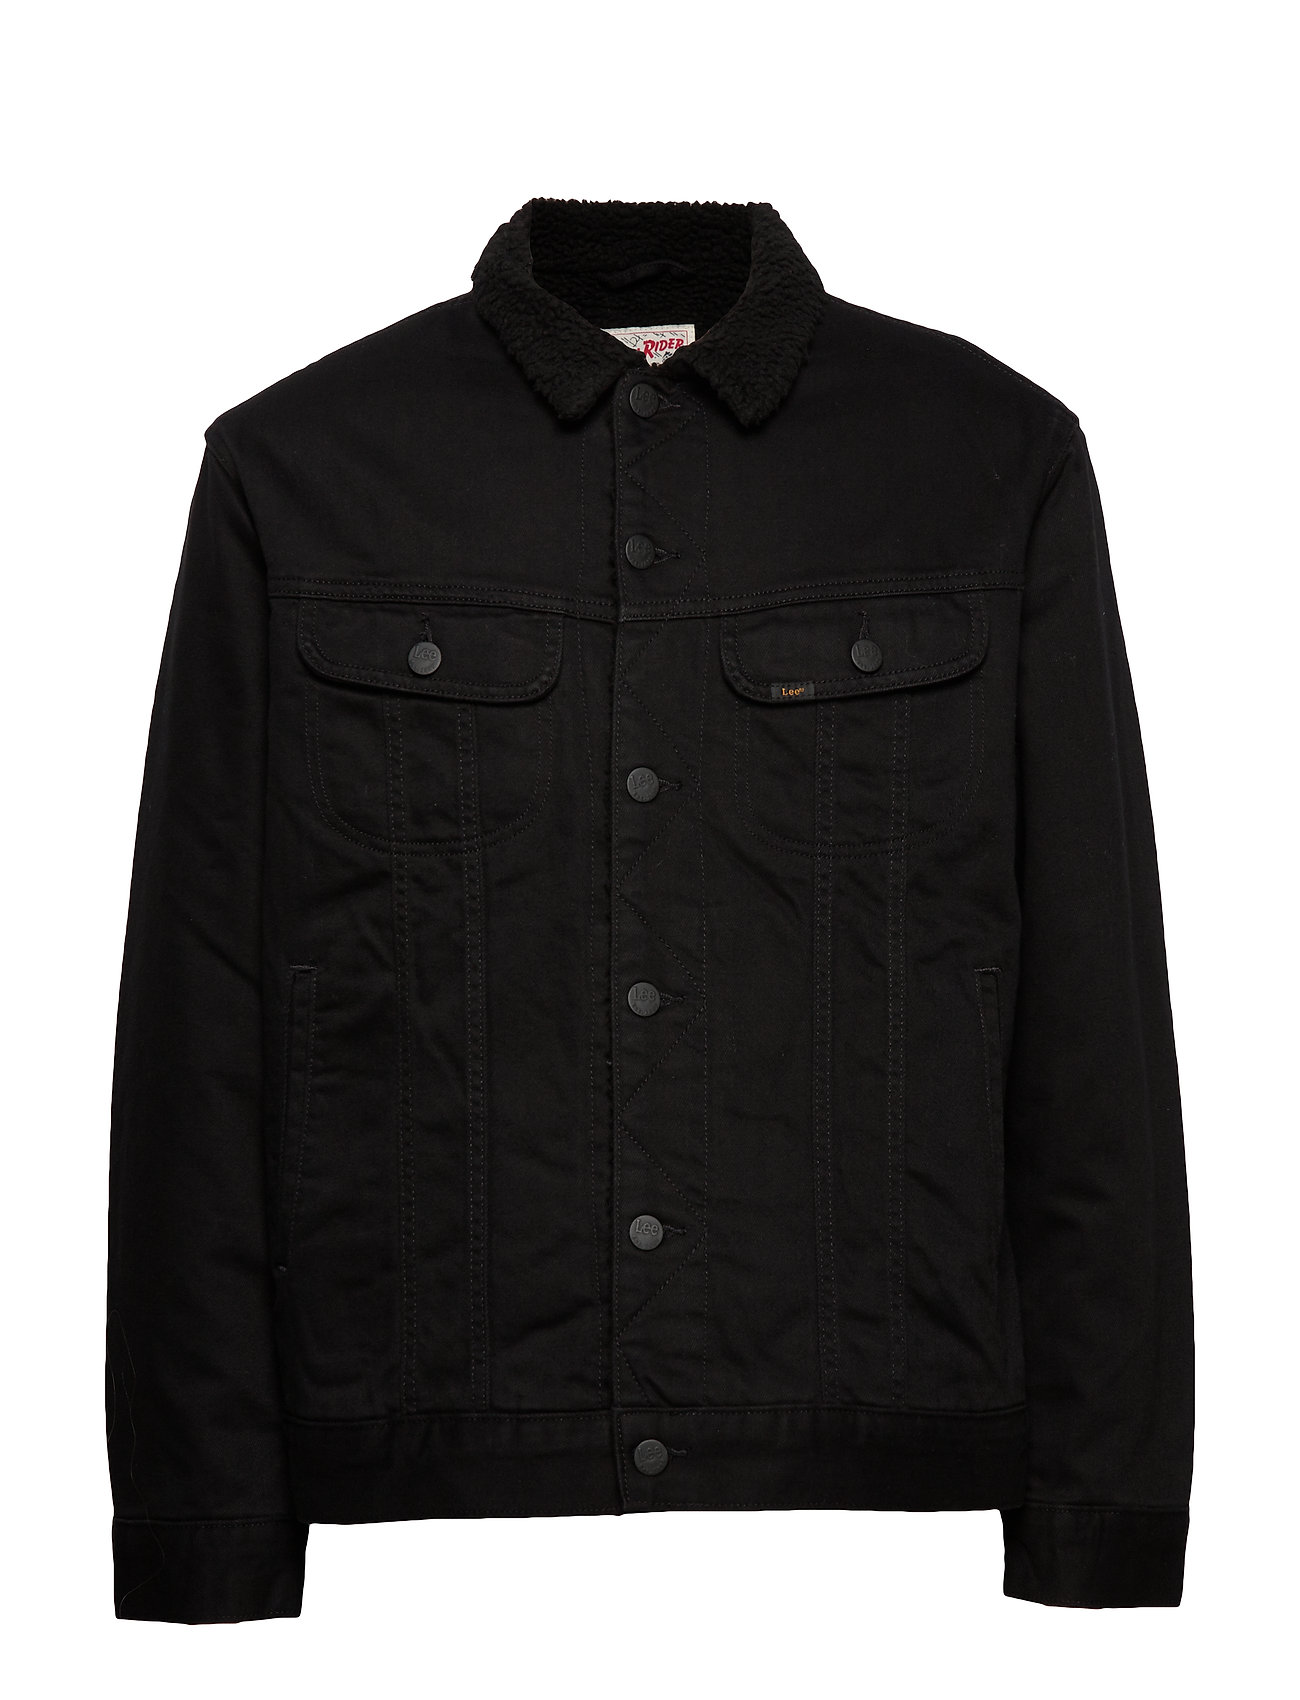 lee sherpa jacket black